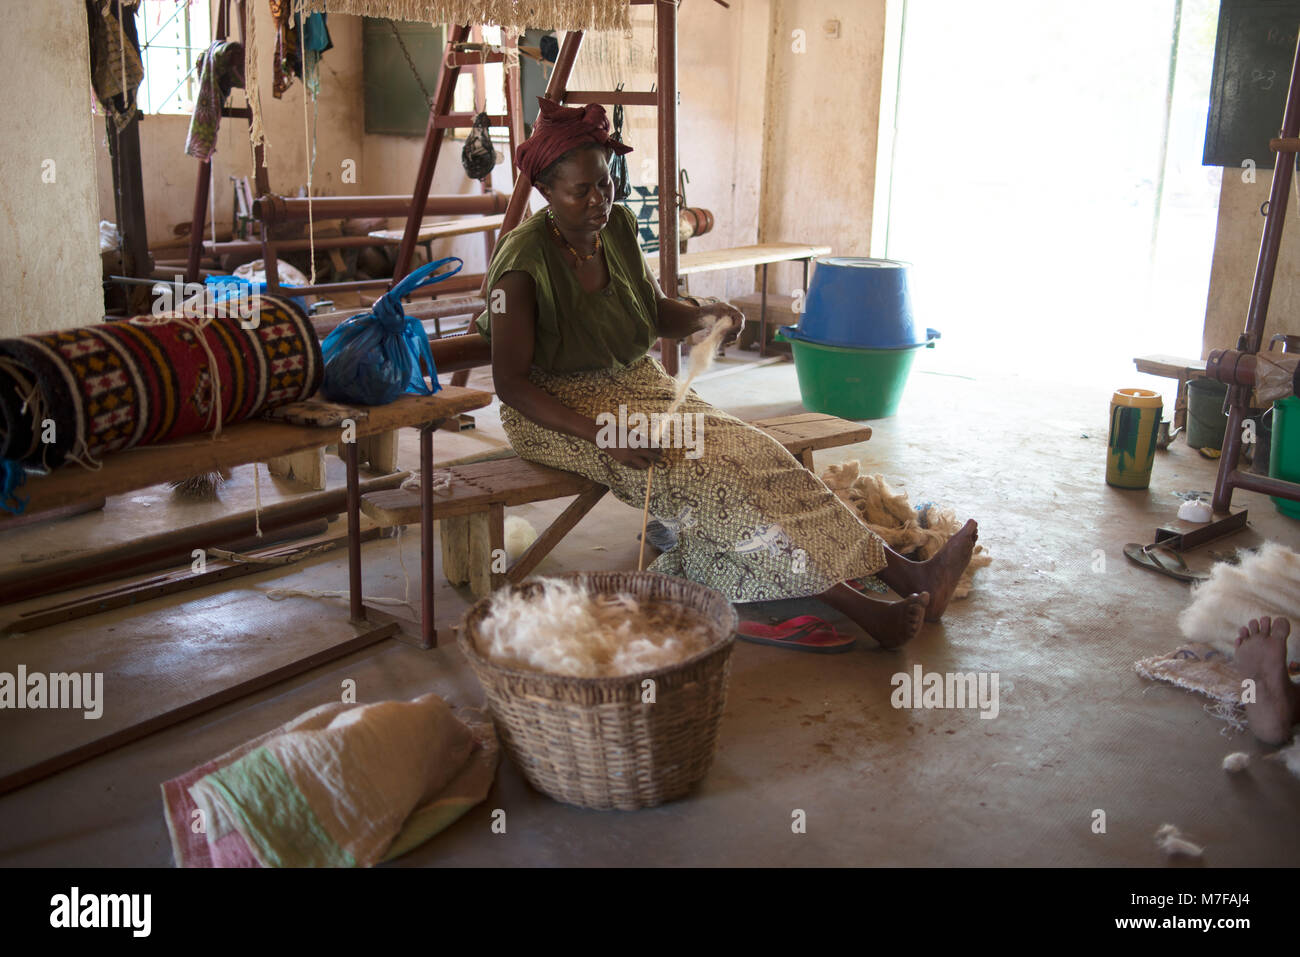 Une femme tourne la laine qui est utilisée pour faire des tapis. Ségou, Mali, Afrique de l'Ouest. Banque D'Images